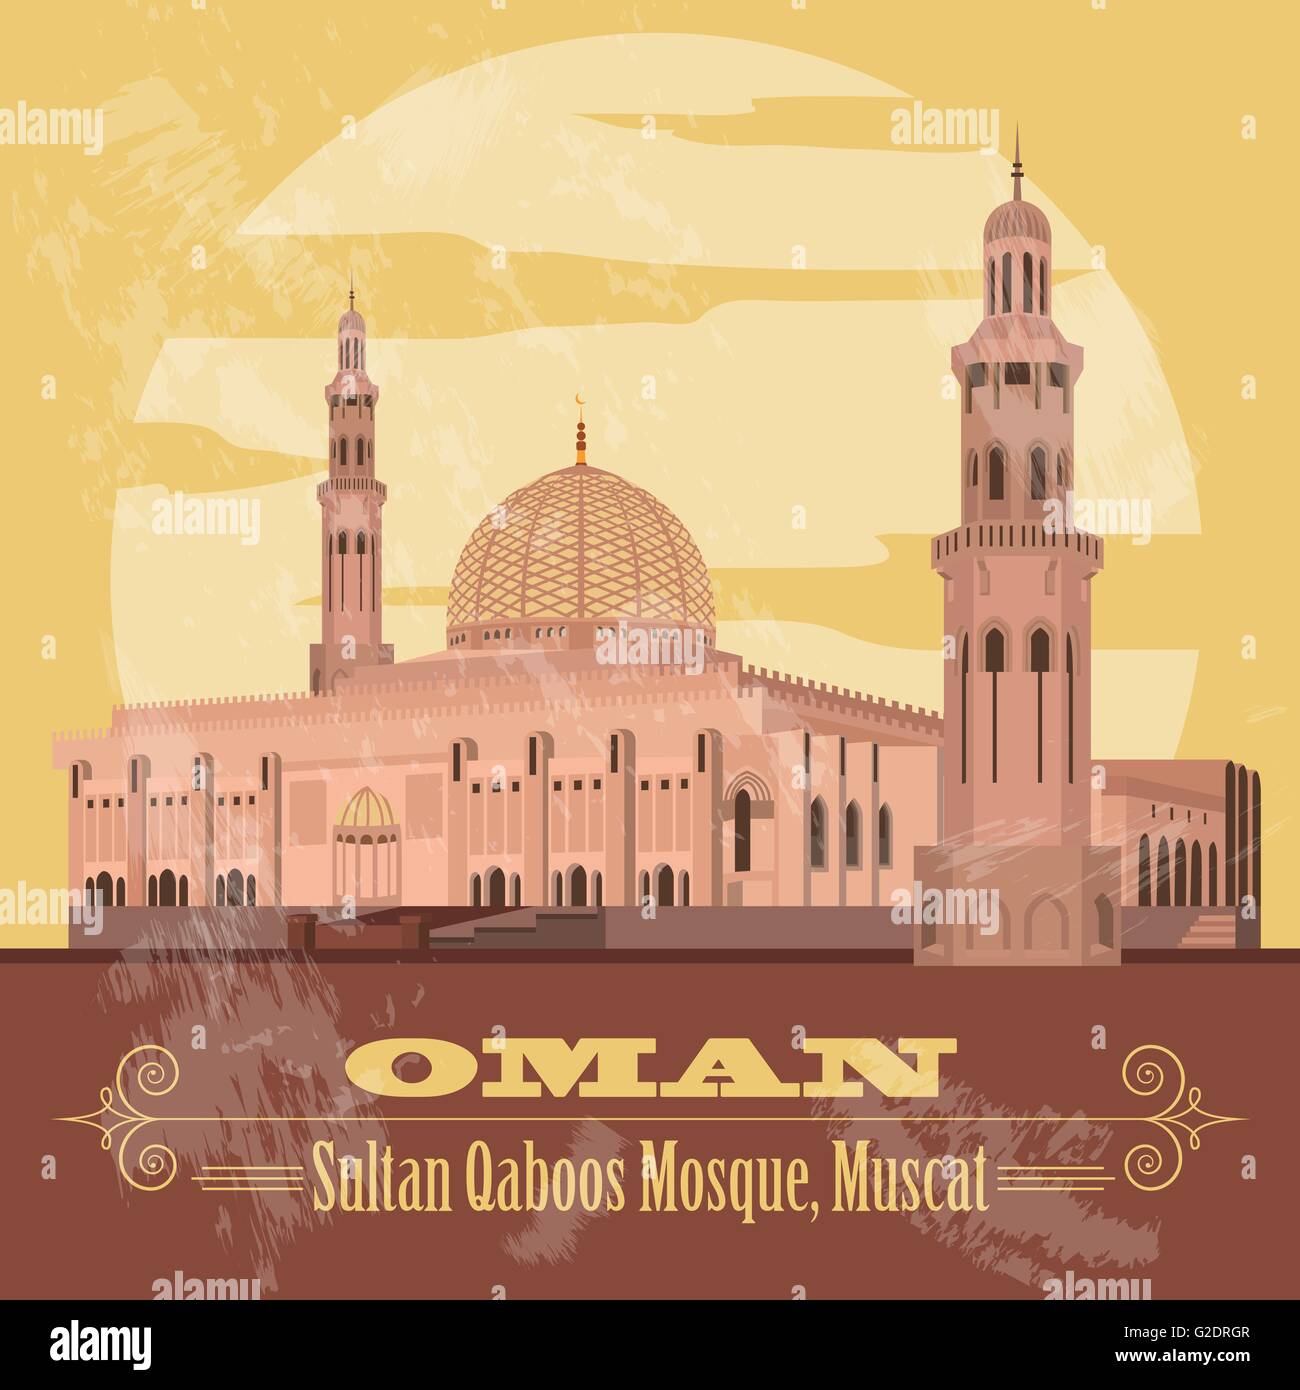 Sultanato de Omán monumentos. Imagen de estilo retro. Mezquita Sultan Qaboos en Muscat. Ilustración vectorial Ilustración del Vector